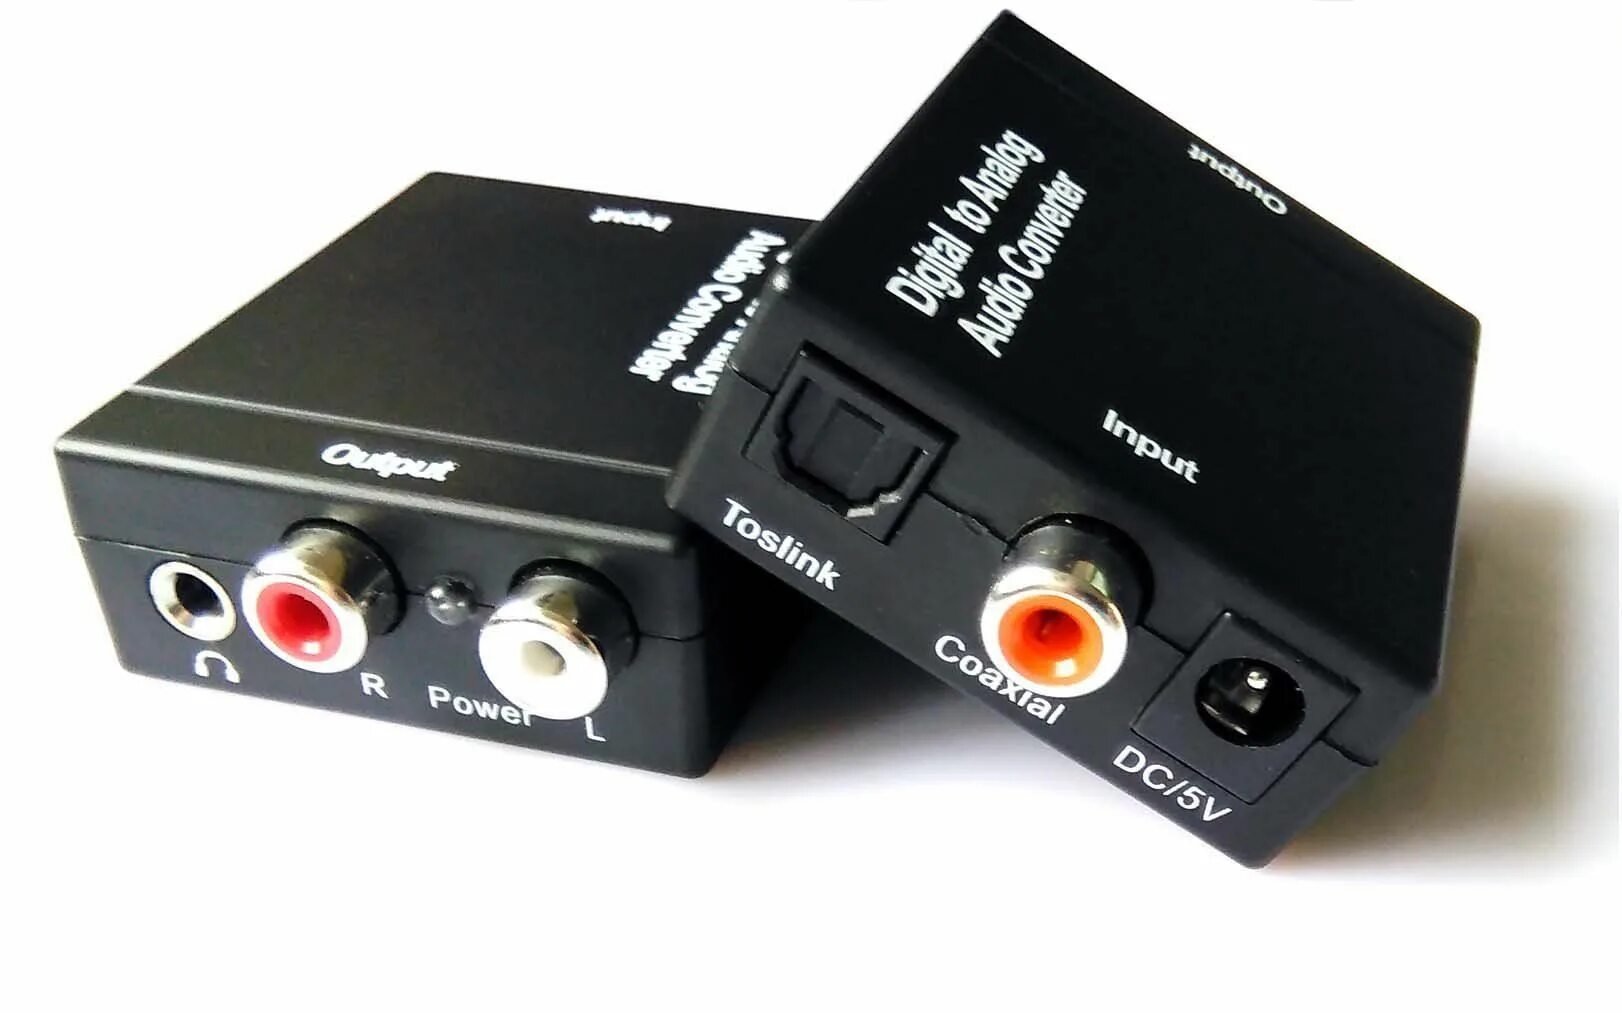 Аналогово цифровой конвертер. Digital to Analog Audio DAC Converter Adapter Digital SPDIF Optical Toslink to 3.5 aux. Коаксиальный адаптер SPDIF К оптическому Toslink RCA. Аналого-цифровой преобразователь Toslink to Coaxial Converter. Цифро-аналоговый преобразователь 5.1.